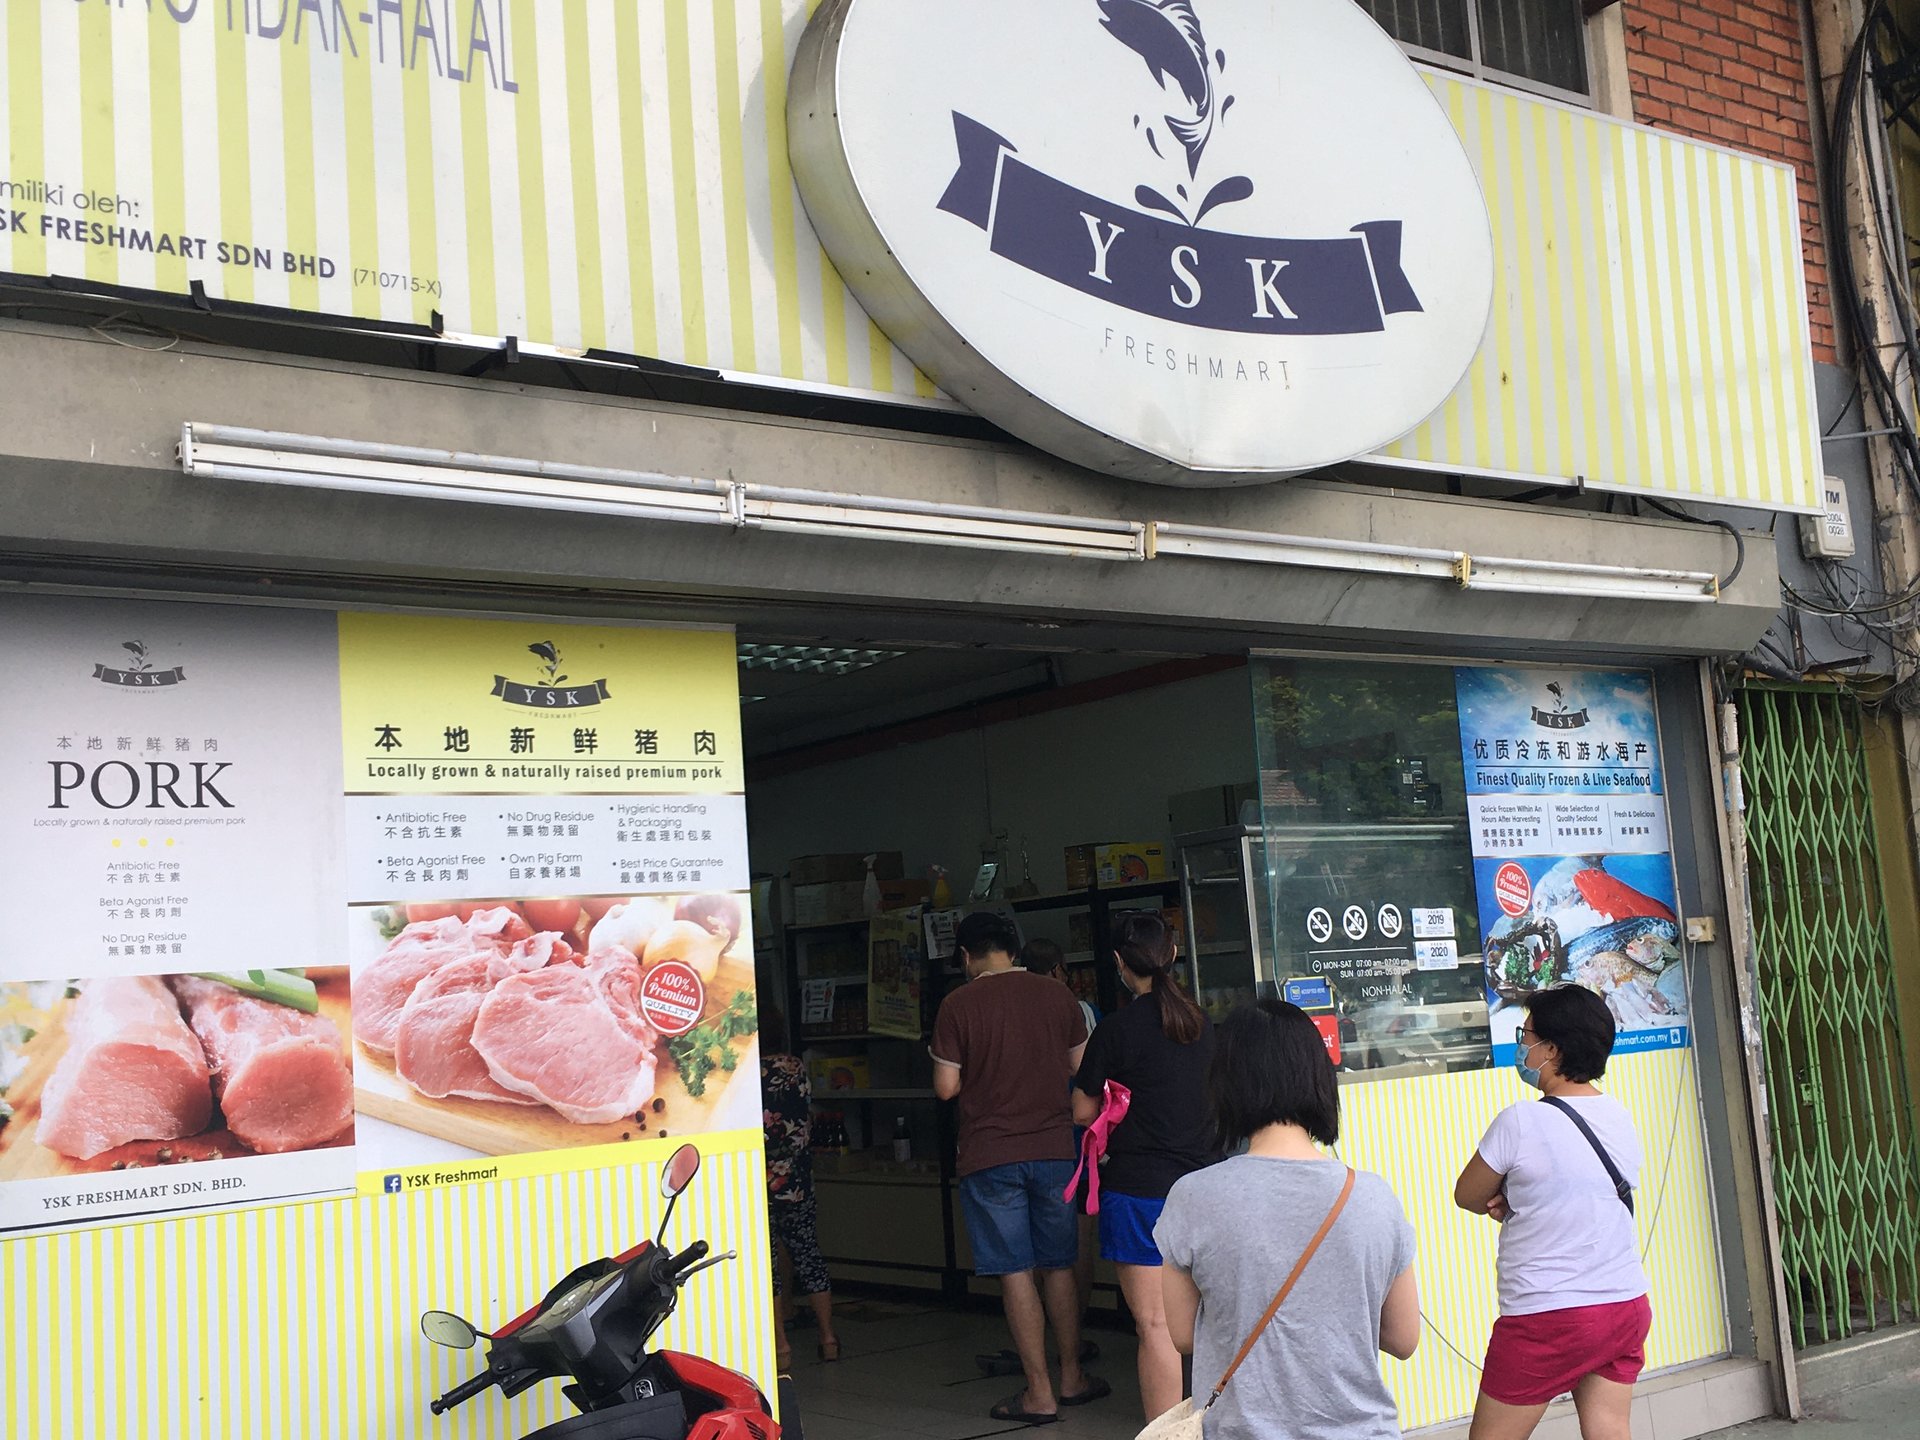 【マレーシア在住が教える】TTDIの半額で豚肉スライスが買える！豚肉買うならYSKがおすすめ